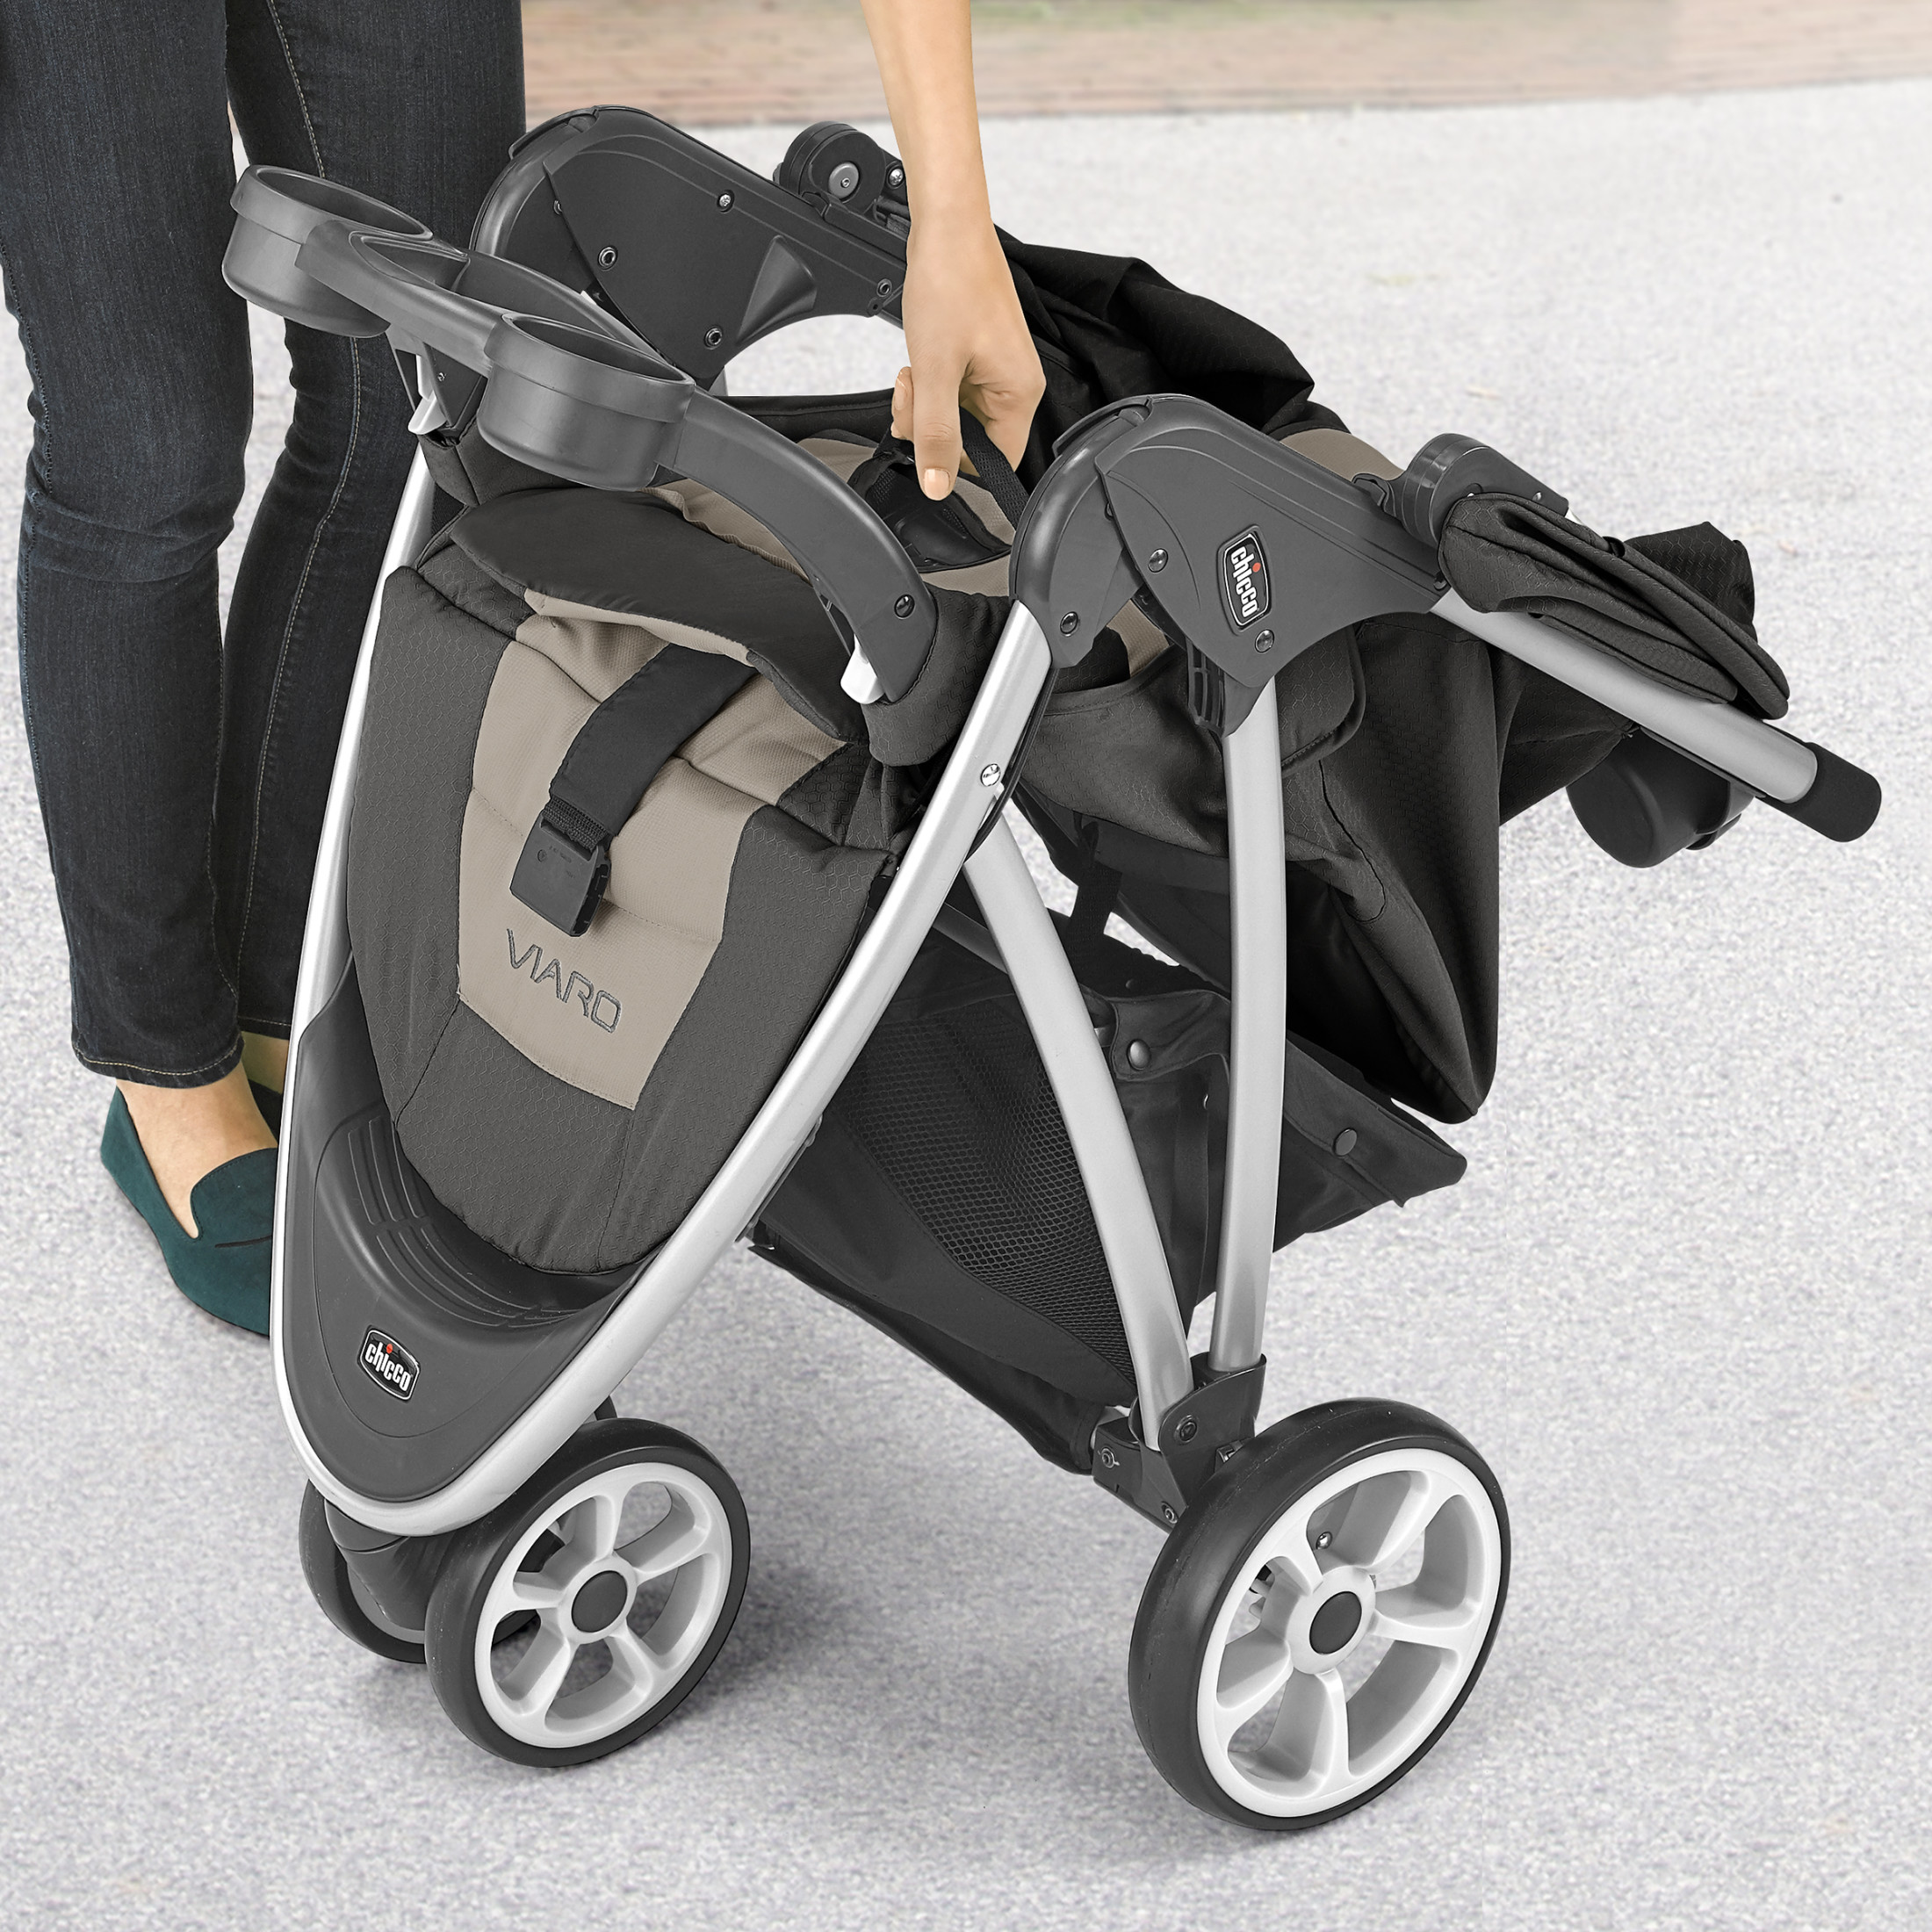 Chicco Viaro Quick-Fold Stroller - Graphite (Grey) - image 4 of 9